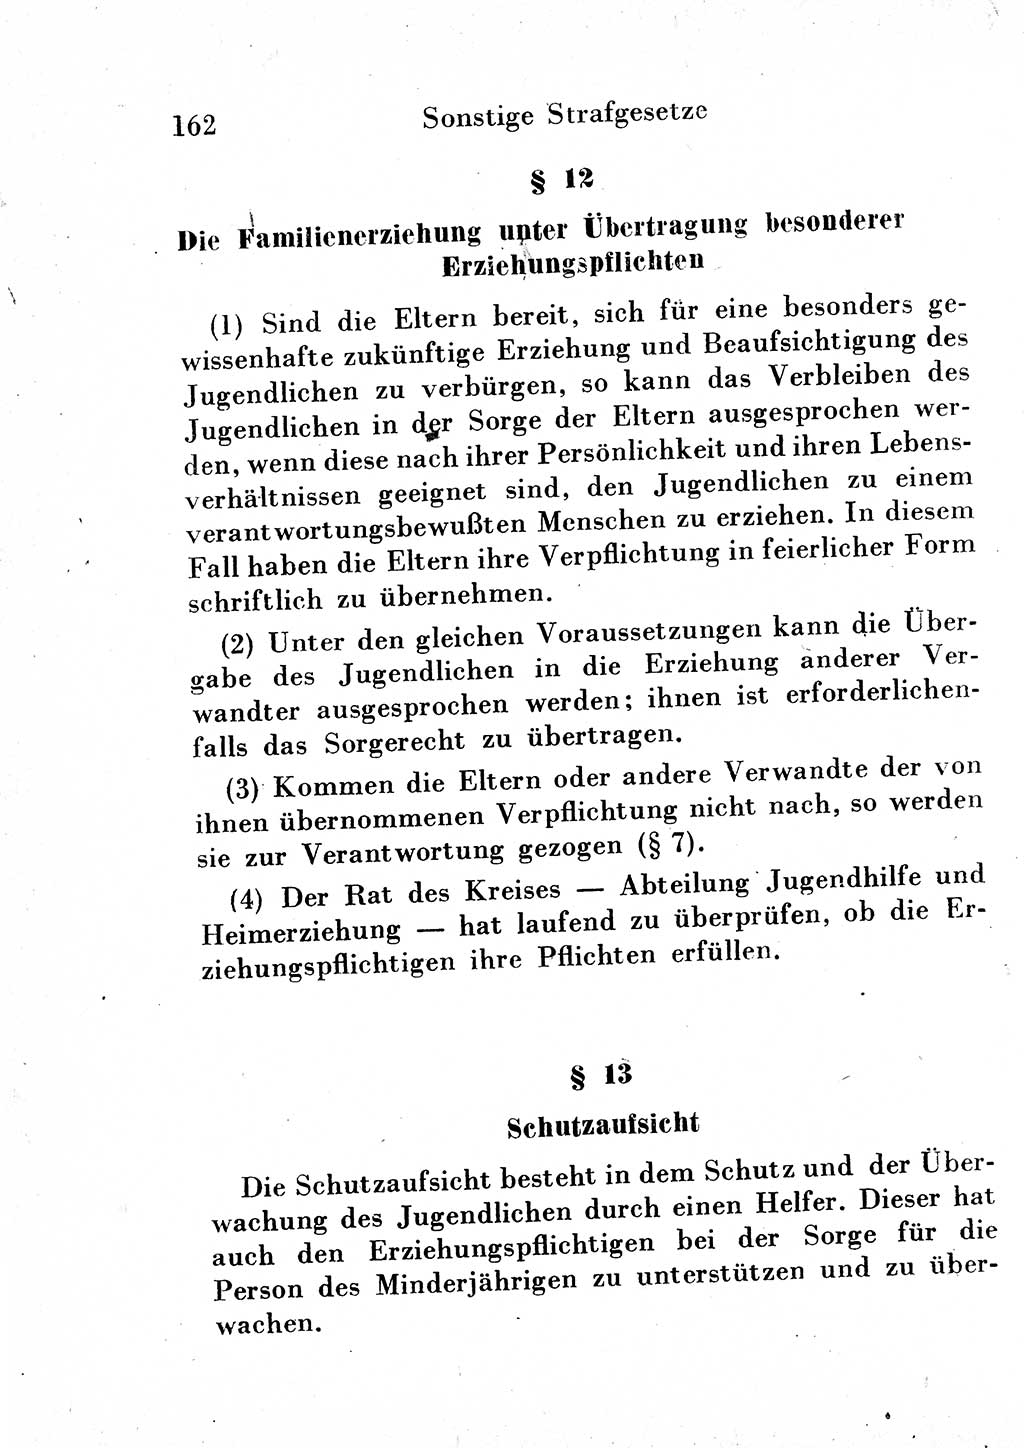 Strafgesetzbuch (StGB) und andere Strafgesetze [Deutsche Demokratische Republik (DDR)] 1954, Seite 162 (StGB Strafges. DDR 1954, S. 162)